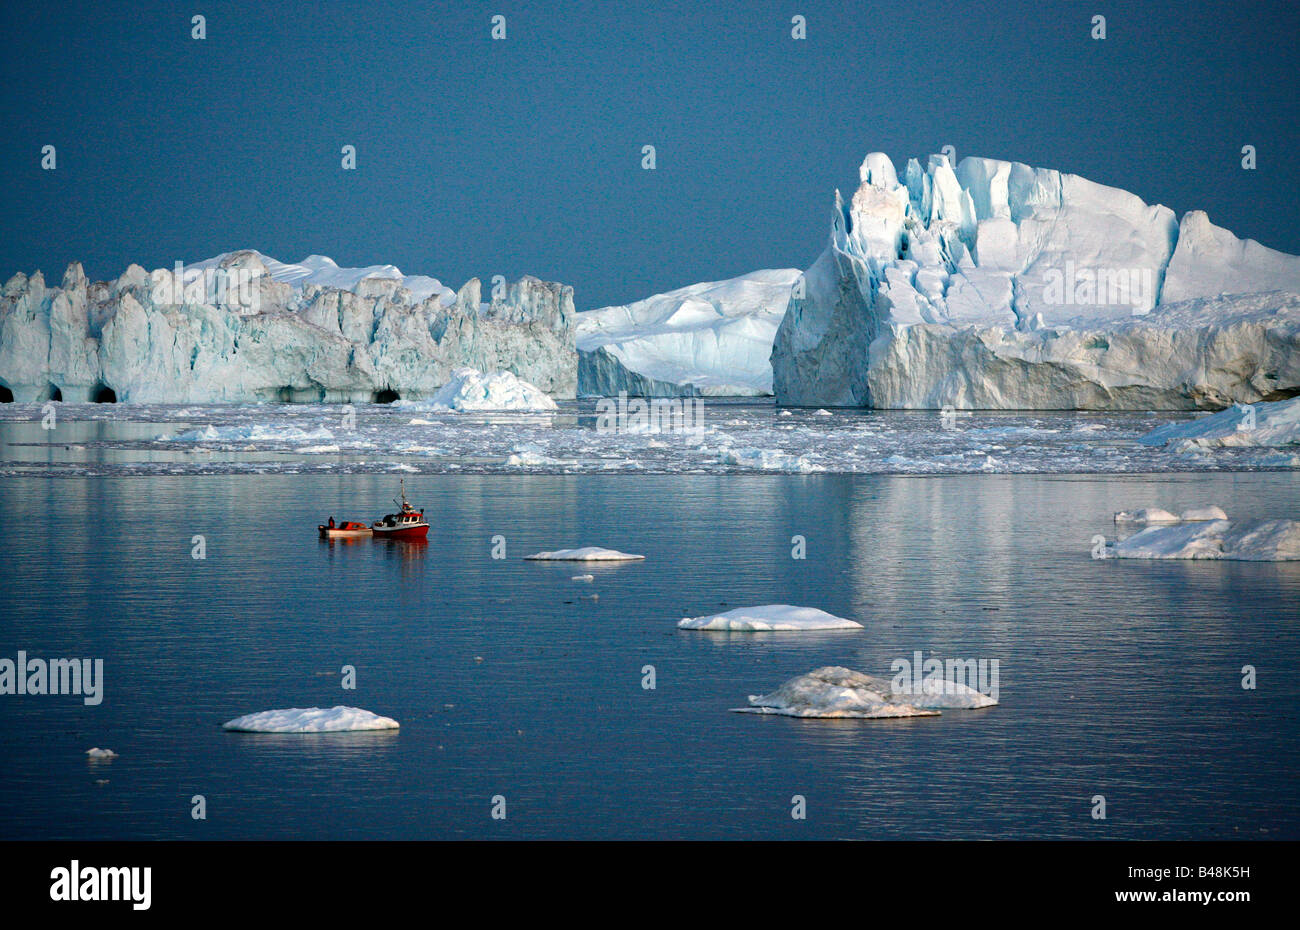 Aug 2008 - Angelboot/Fischerboot von Ilulissat Kangerlua Gletscher auch bekannt als Sermeq Kujalleq am Disko-Bucht-Grönland Stockfoto